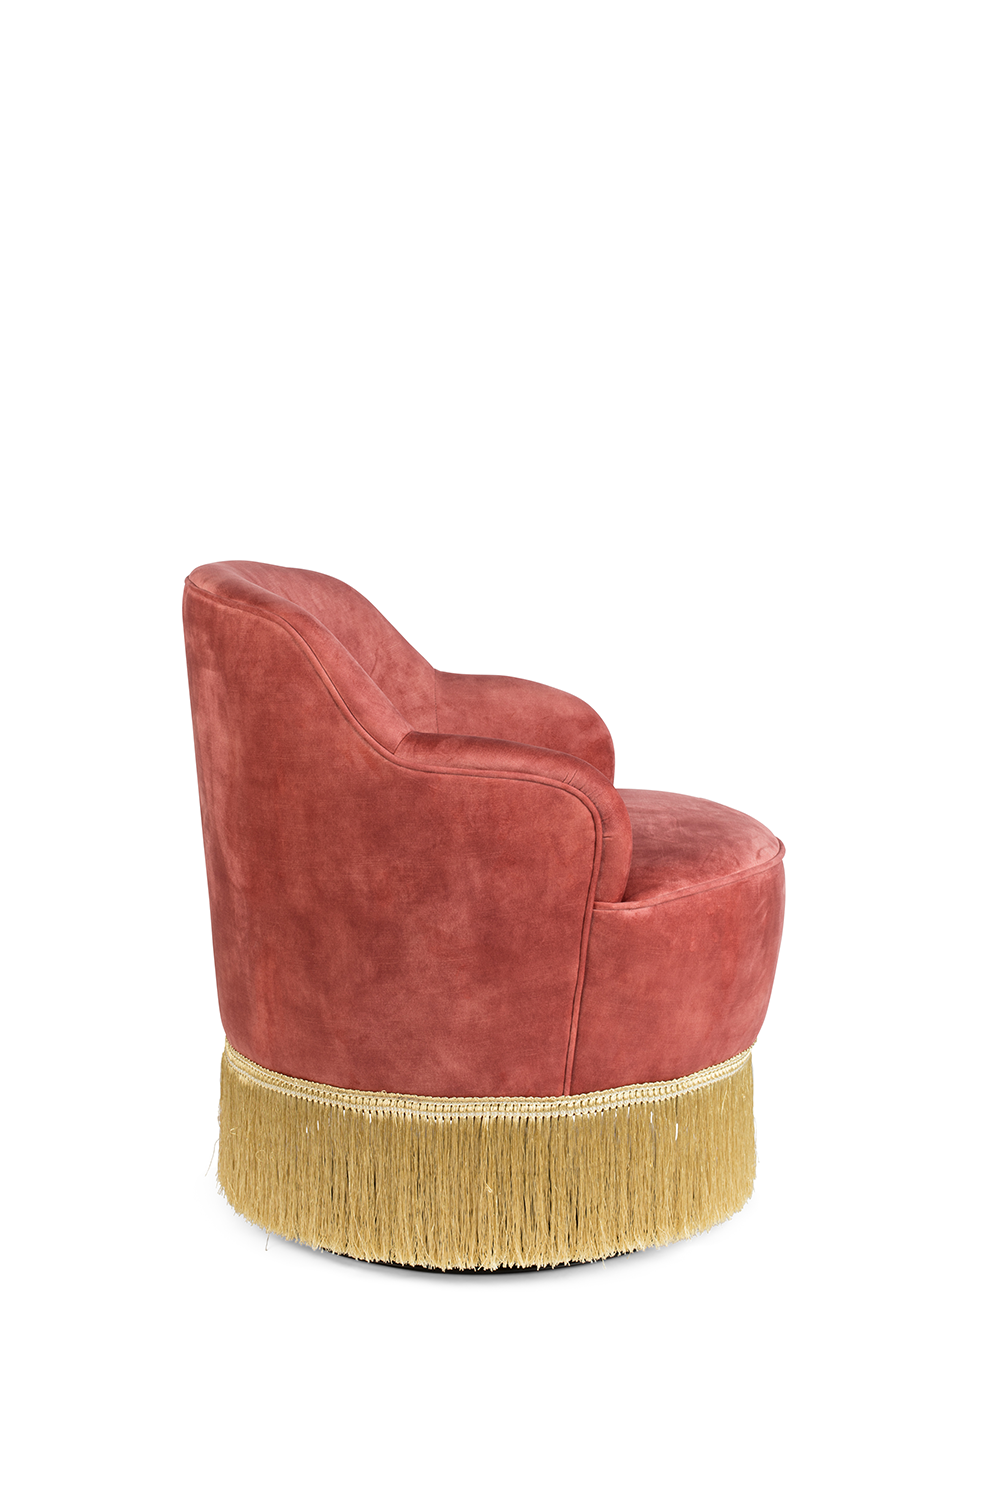 FRINGE ME UP Loungesessel in Altrosa präsentiert im Onlineshop von KAQTU Design AG. Sessel ist von Bold Monkey